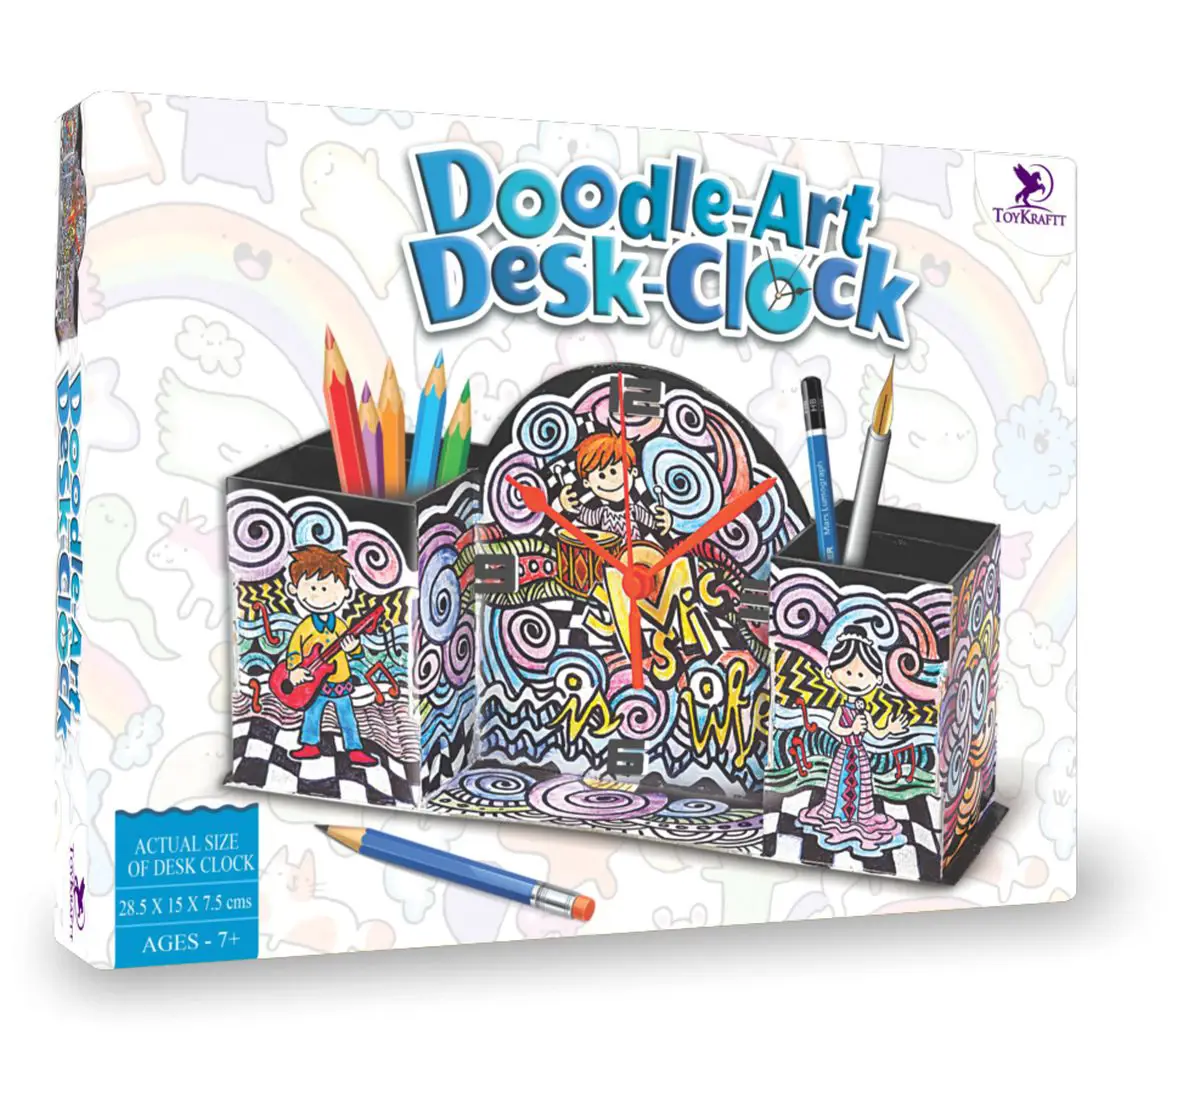 Toy Kraft Doodle Design - Desk Clock, Multicolor, 7Y+